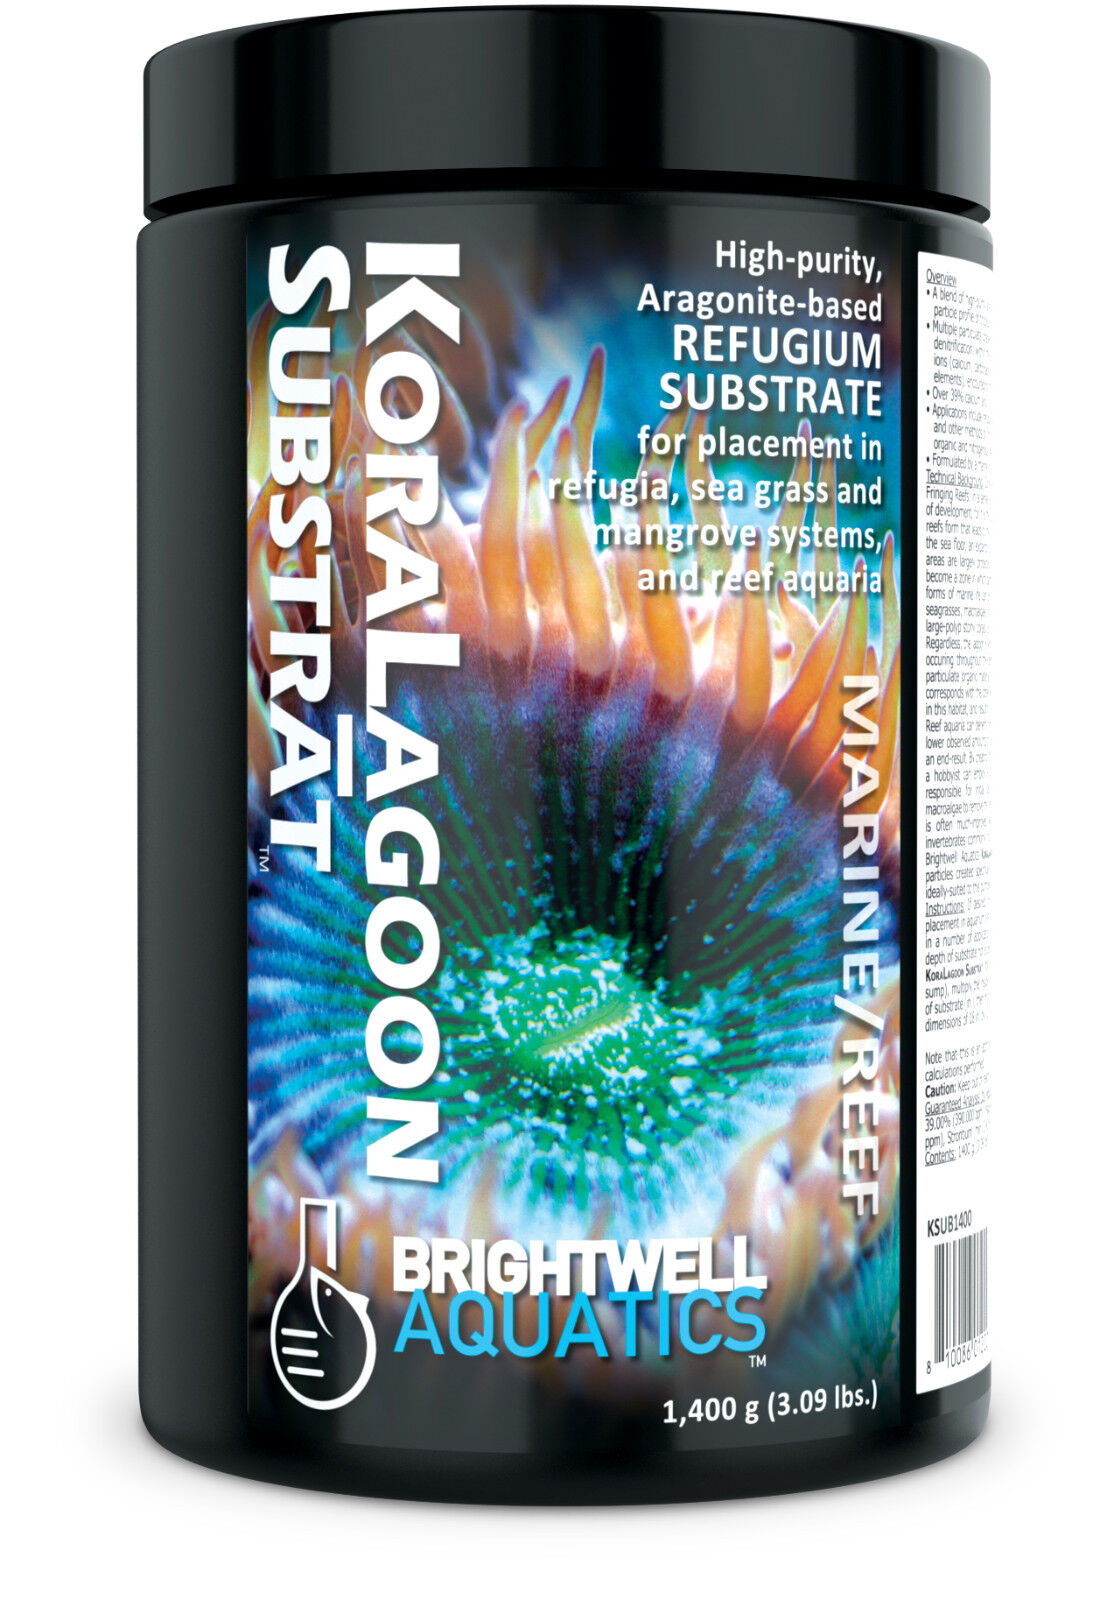 Brightwell Aquatics Koralagoon 1 substrate Max Elegant 41% OFF 4kg